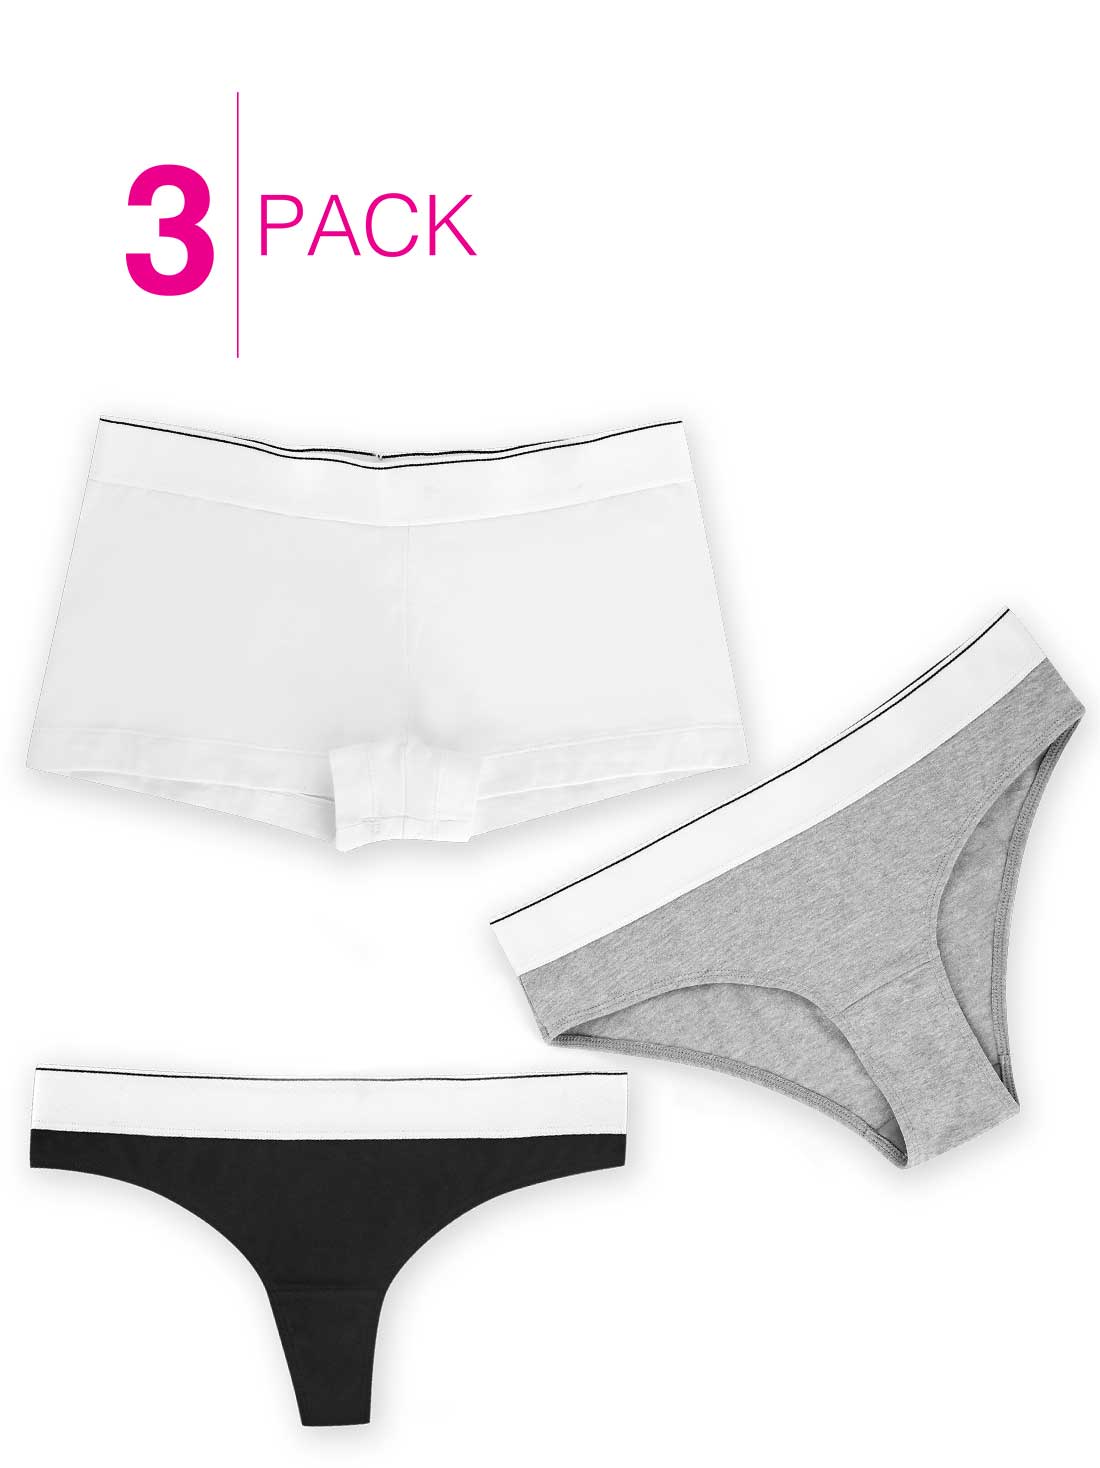 Lavender 3-Pack Multi Silhouette Panties 24336